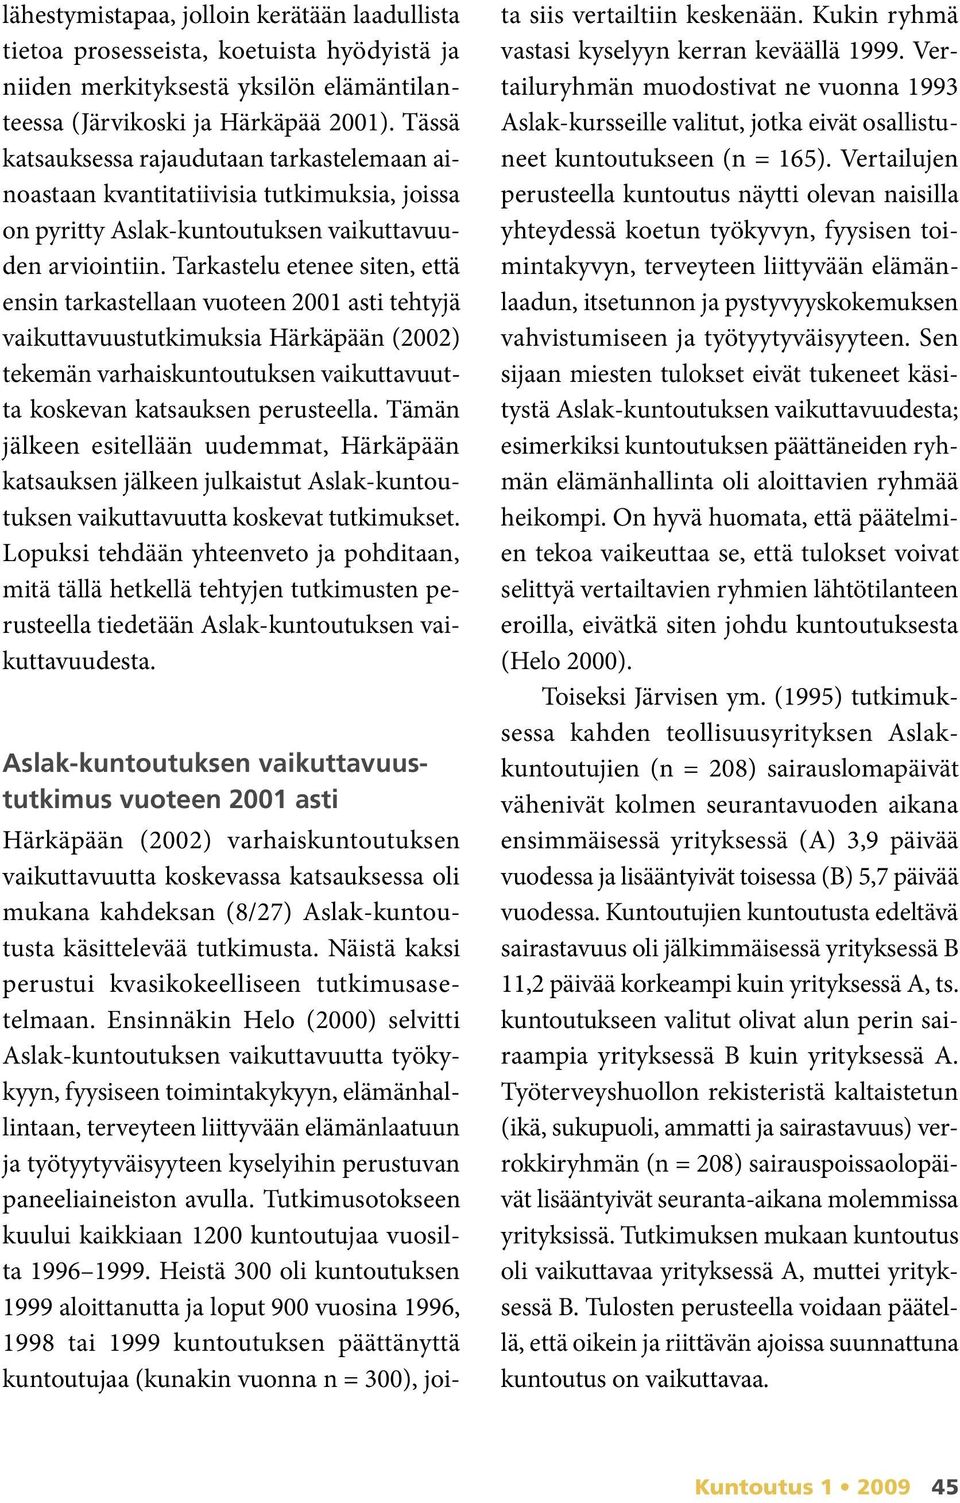 Tarkastelu etenee siten, että ensin tarkastellaan vuoteen 2001 asti tehtyjä vaikuttavuustutkimuksia Härkäpään (2002) tekemän varhaiskuntoutuksen vaikuttavuutta koskevan katsauksen perusteella.